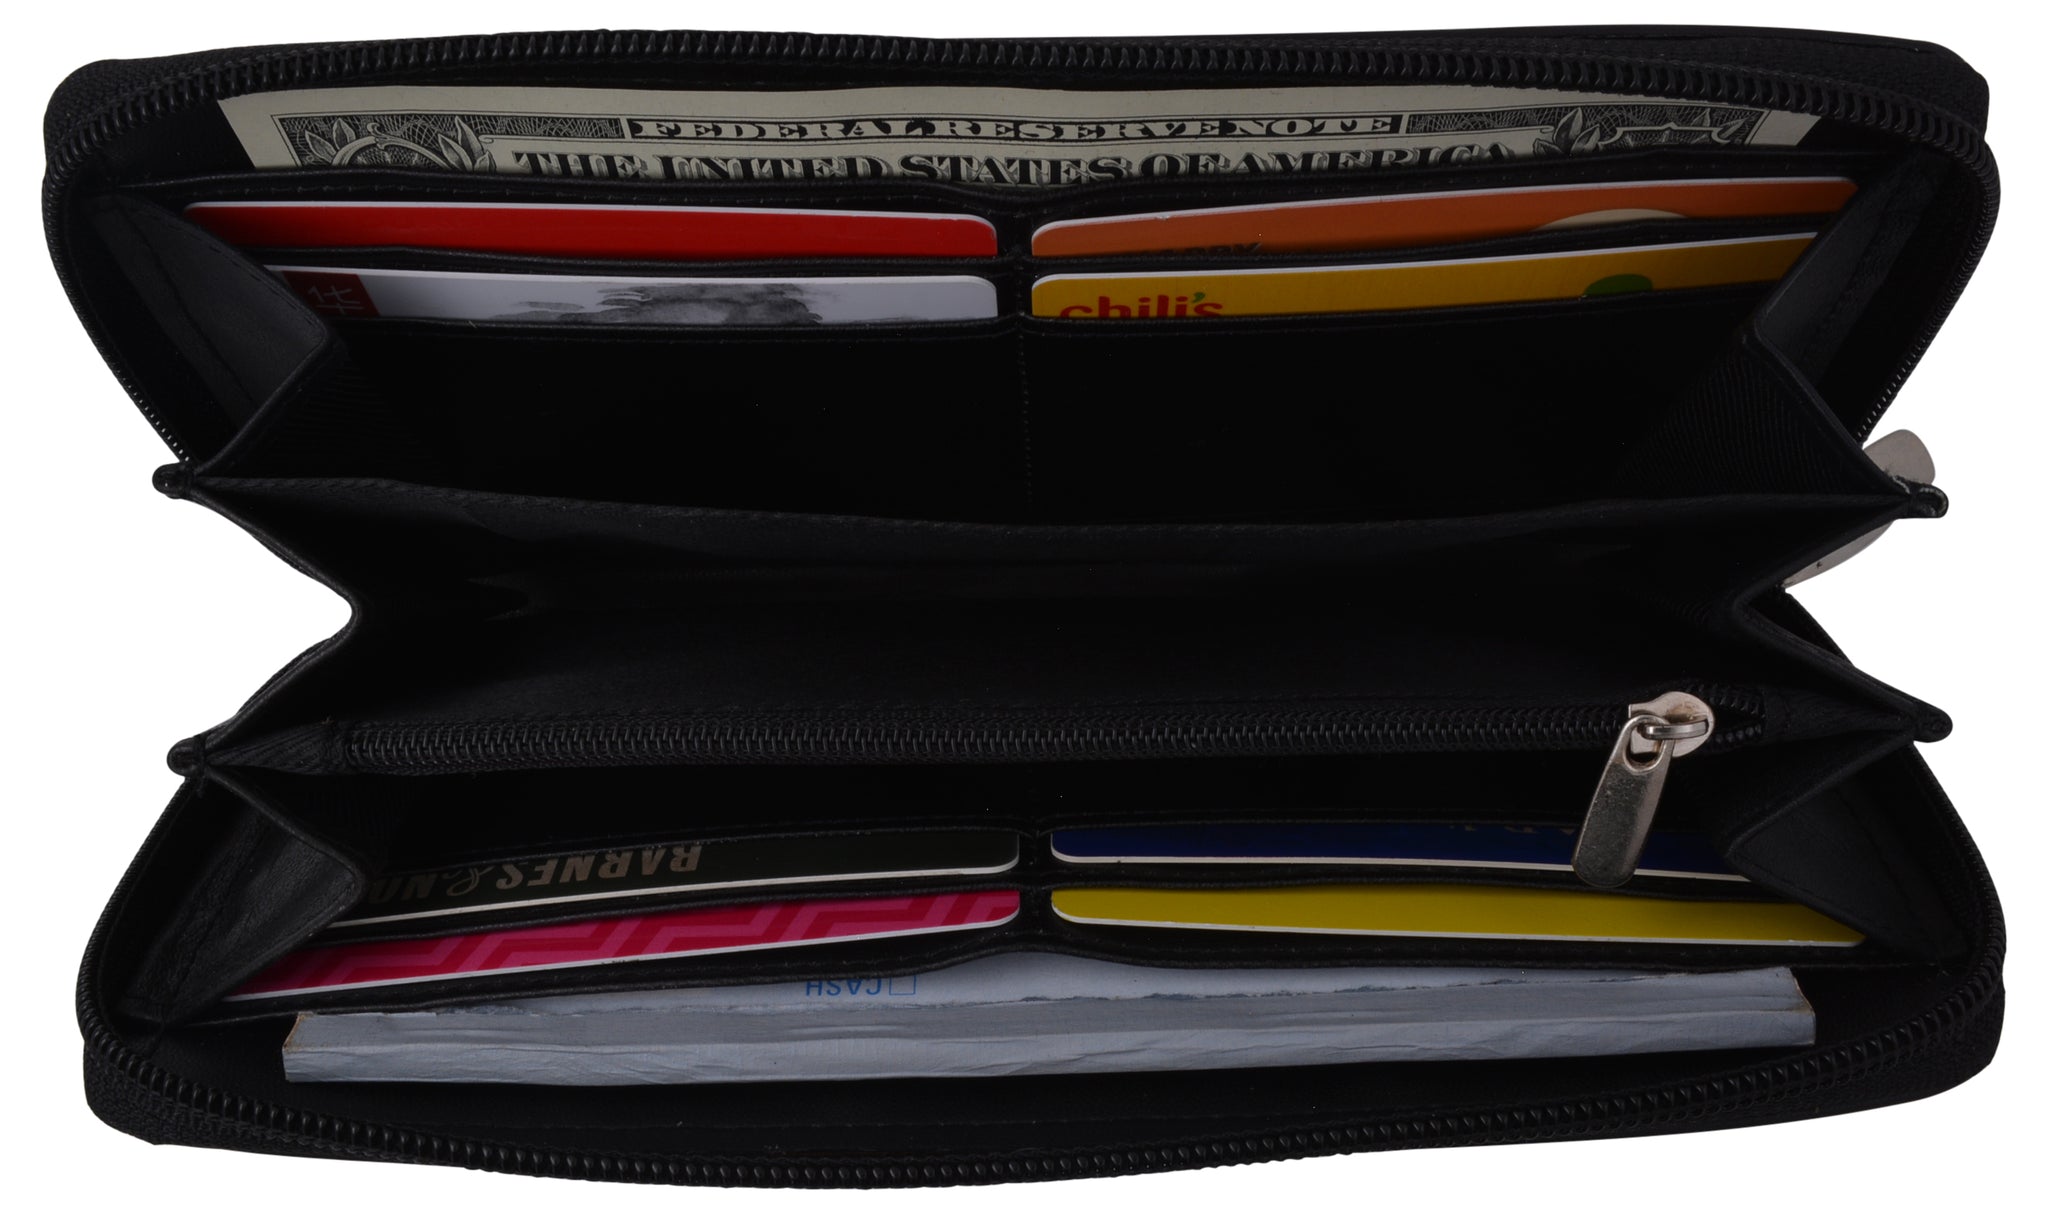  Women's Wallet Zipper Card Case Mobile Wallet Clutch